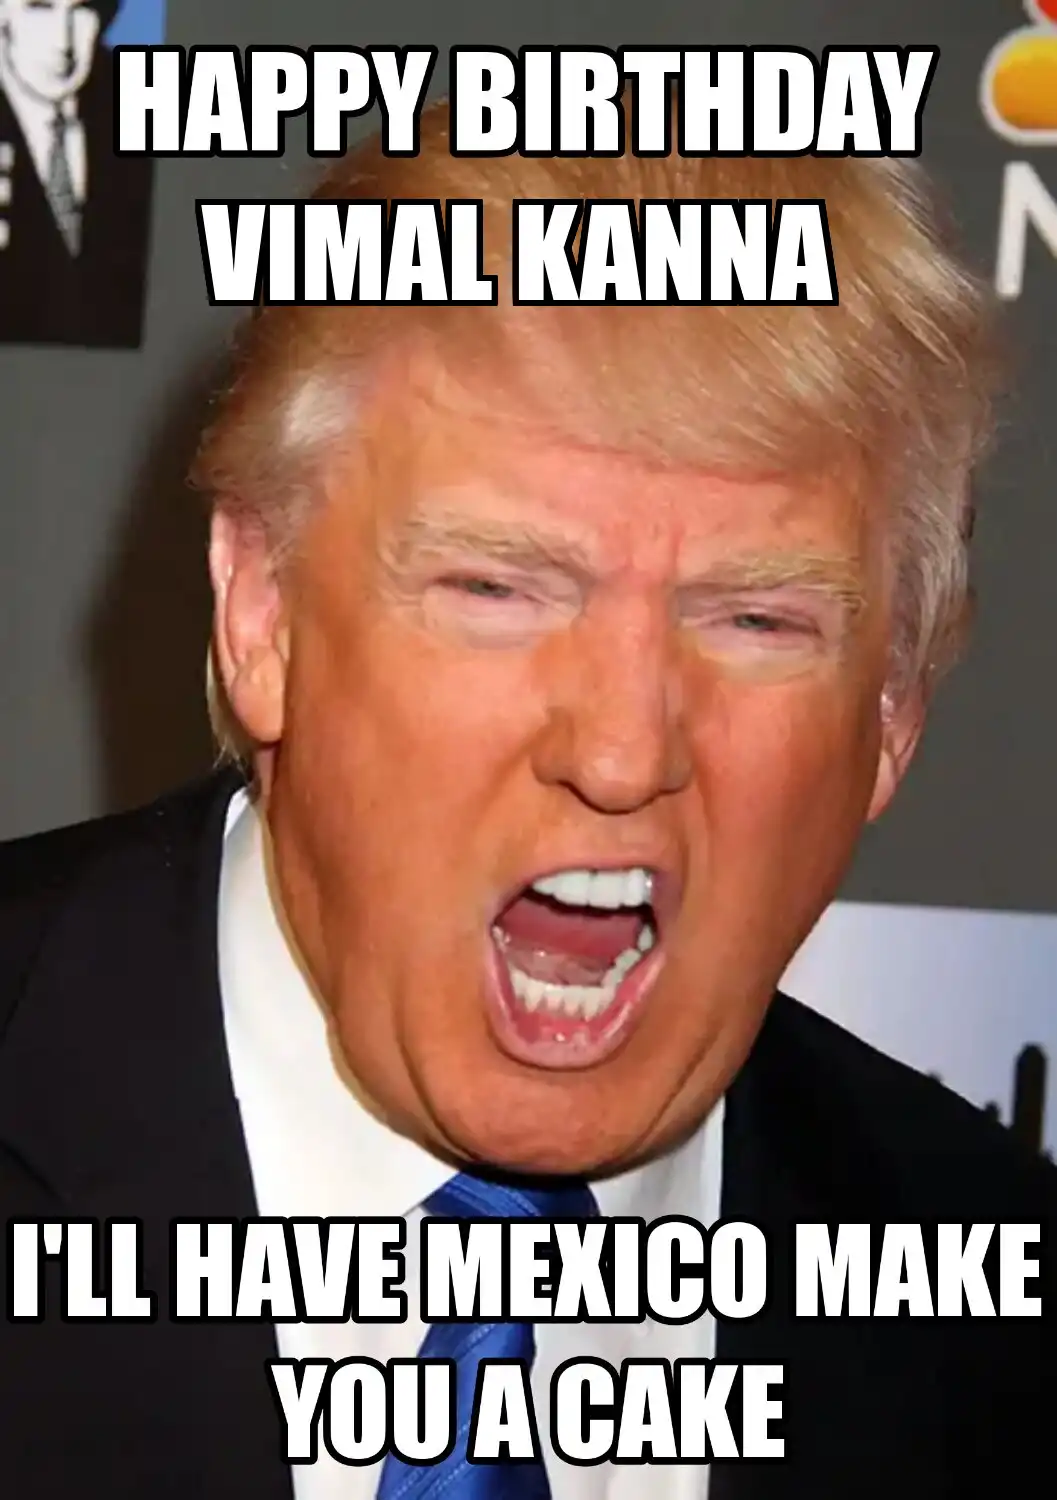 Happy Birthday Vimal kanna Mexico Make You A Cake Meme